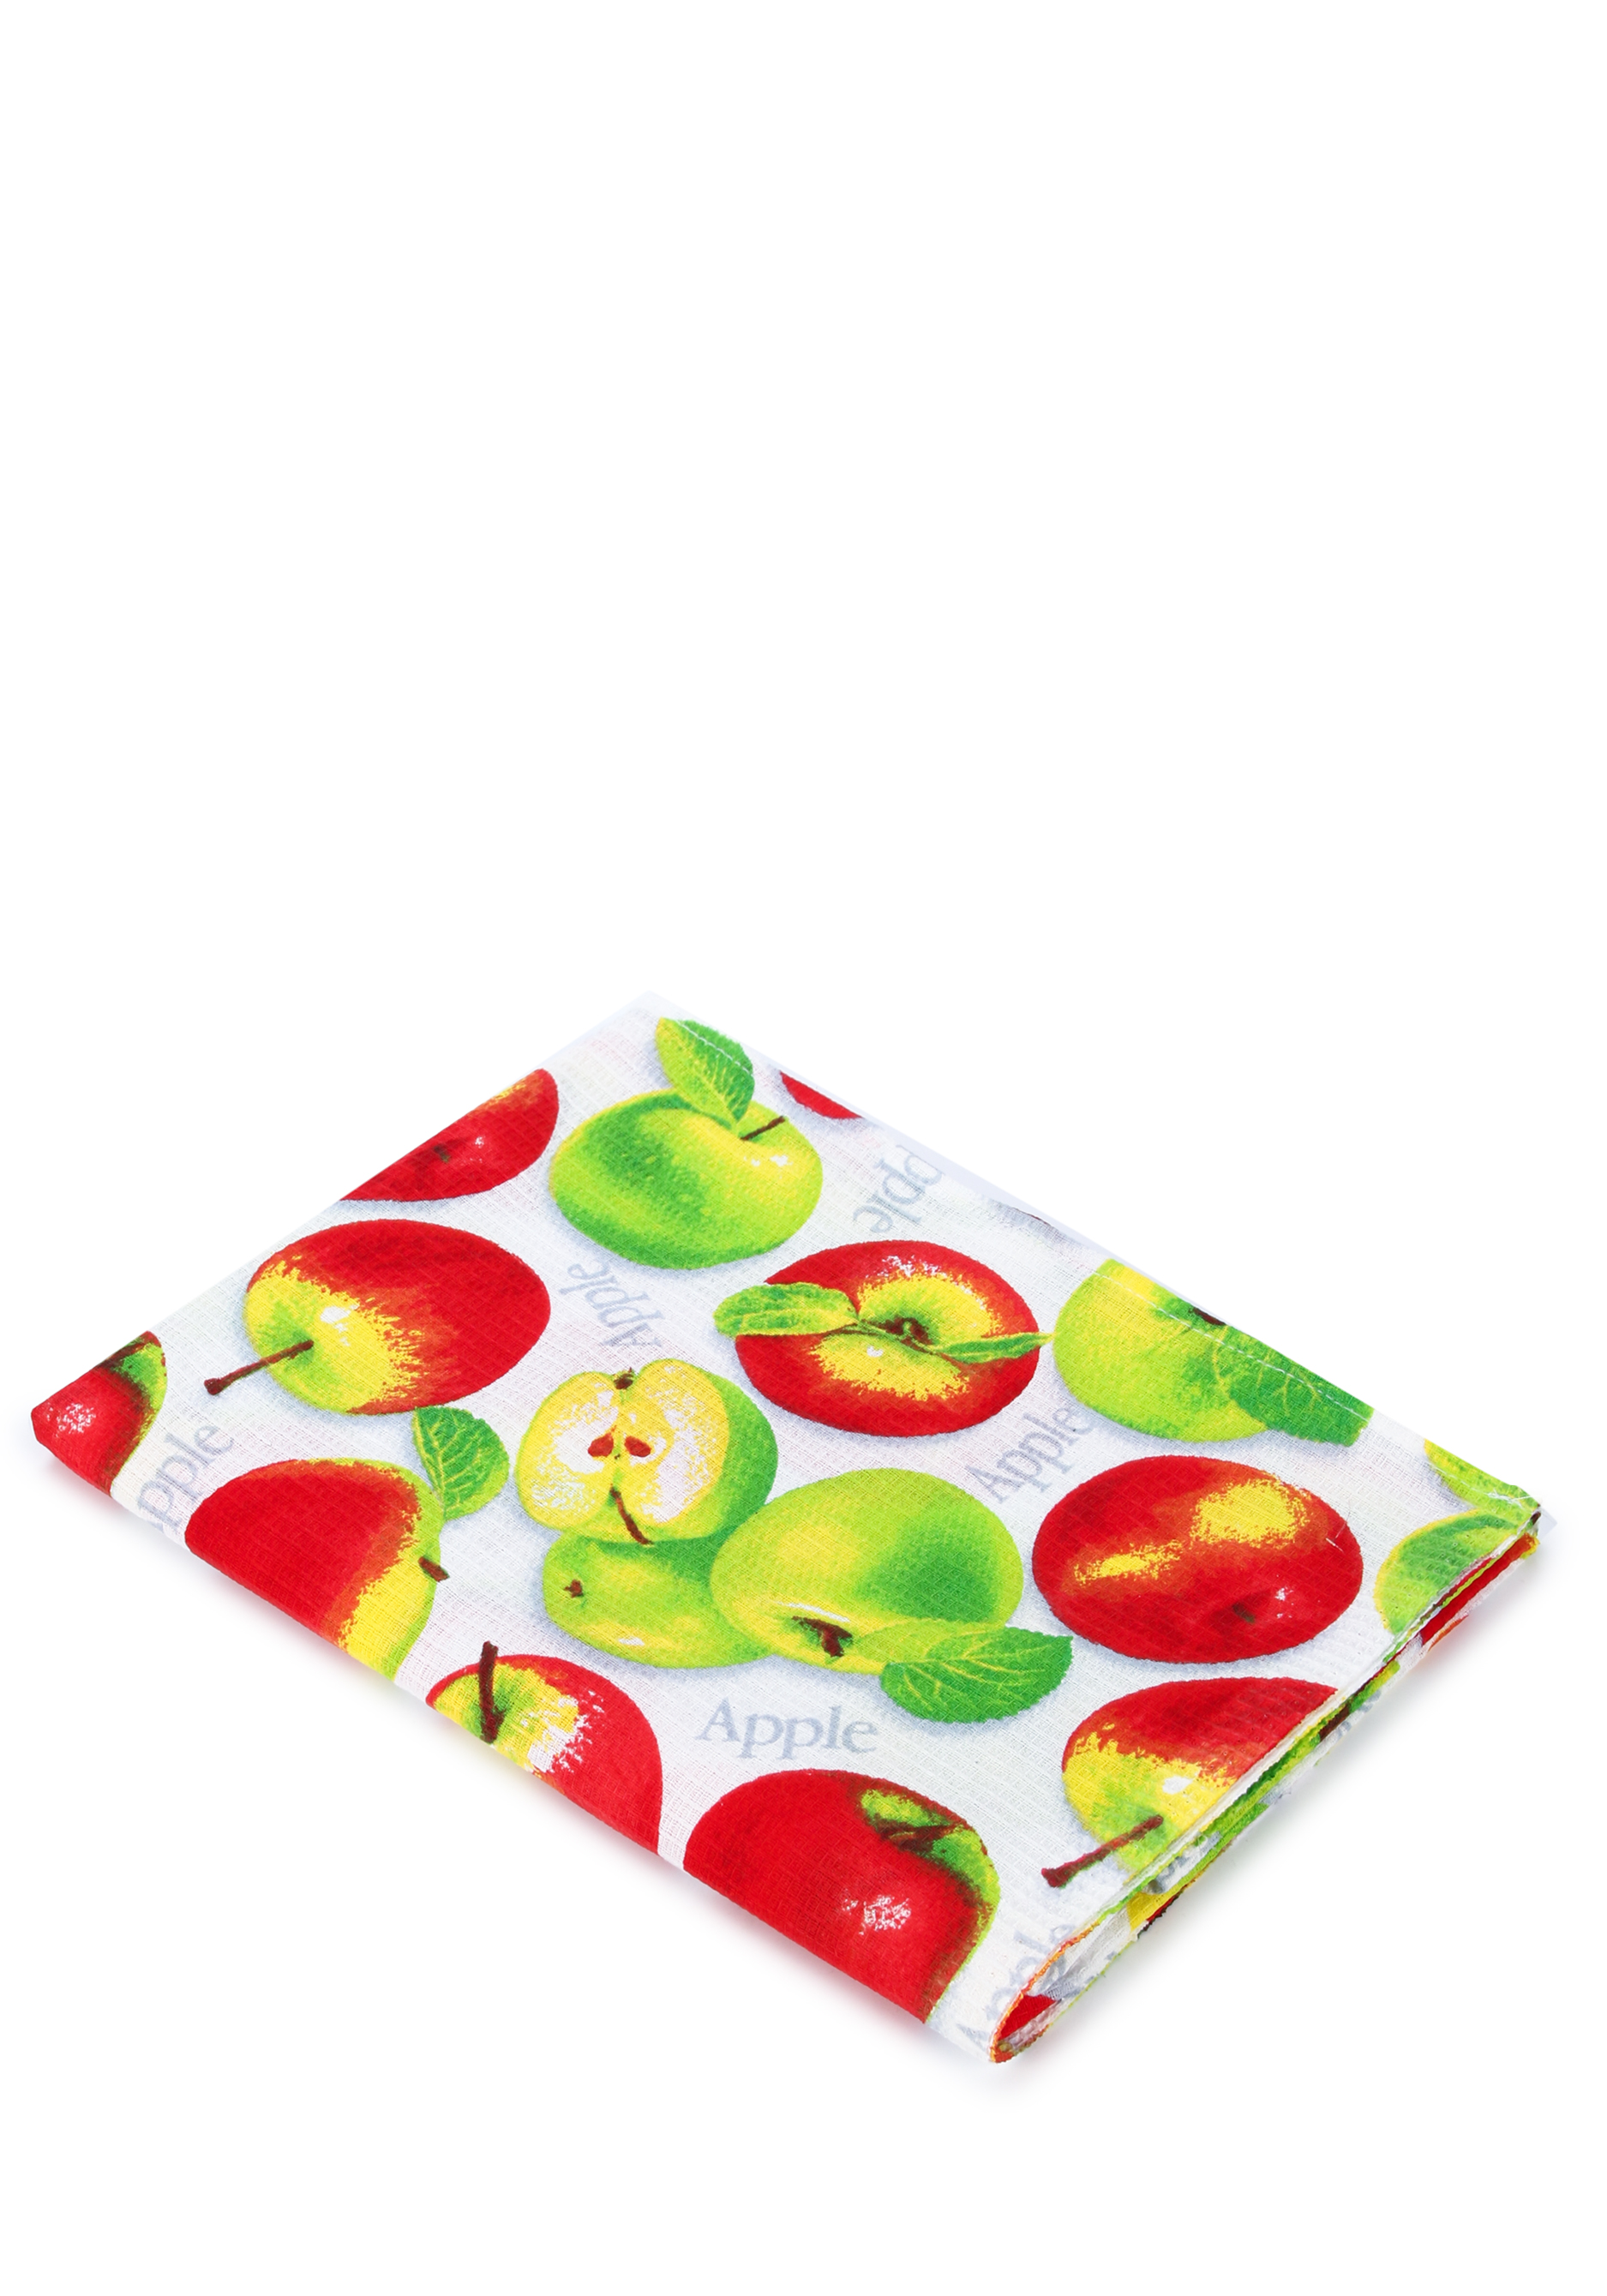 Полотенце вафельное "Яблочный сад" Гутен Морген, цвет мультиколор, размер 75*150